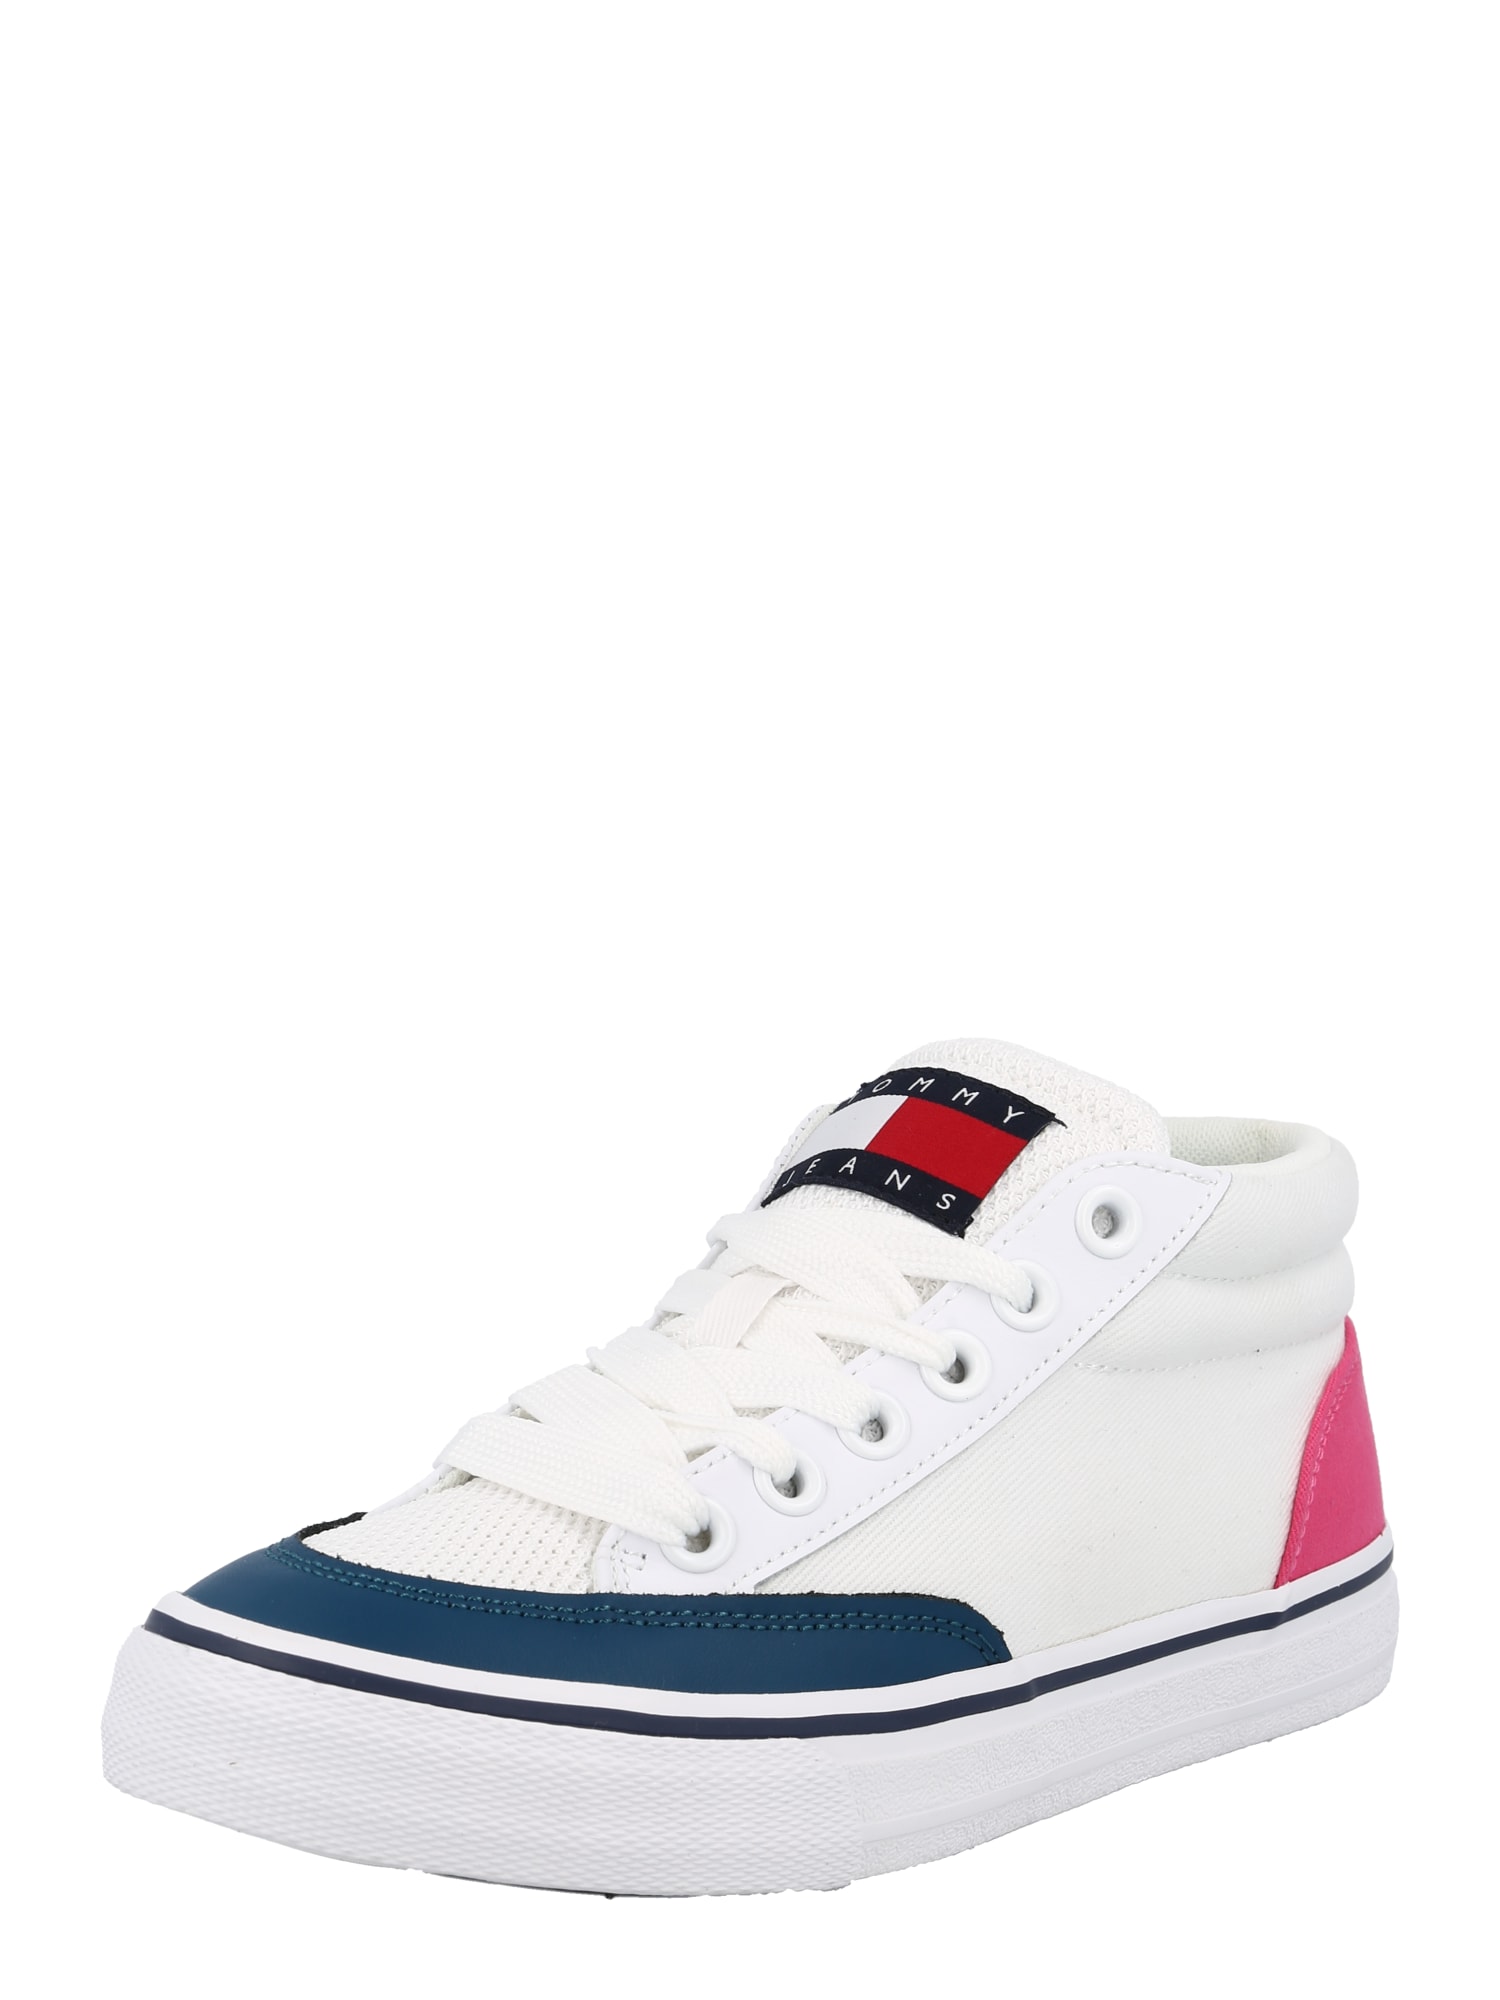 Tommy Jeans Augstie brīvā laika apavi degvielas krāsas / gaiši rozā / sarkans / balts